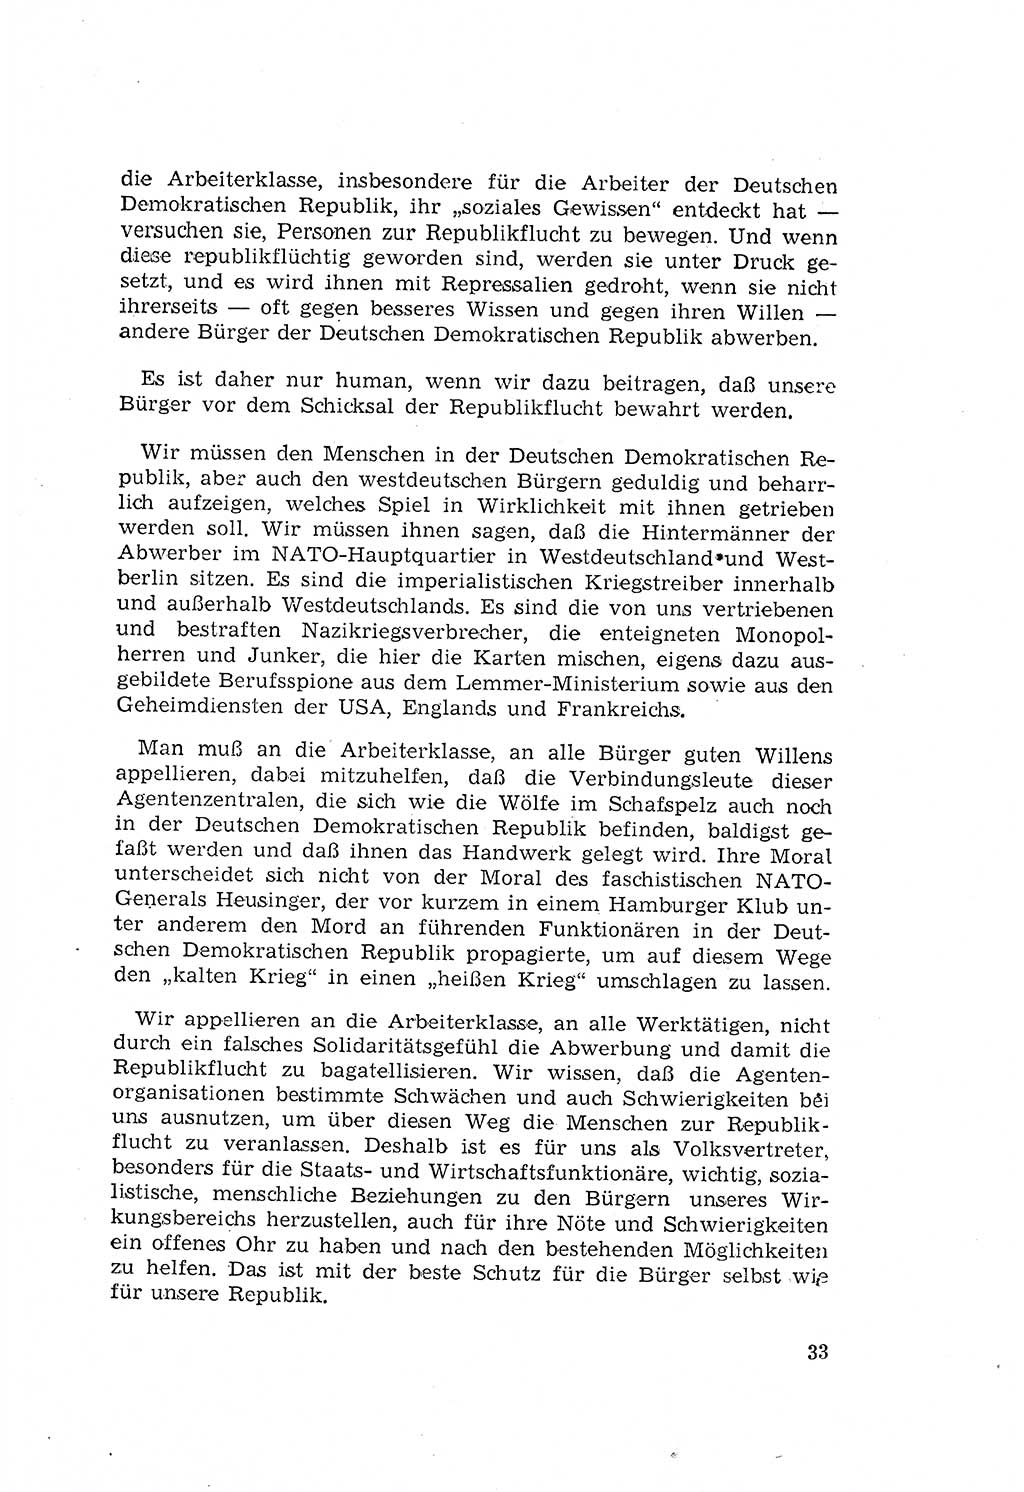 Zum Erlaß des Gesetzes zur Ergänzung des Strafgesetzbuches (StGB), Strafergänzungsgesetz (StEG) [Deutsche Demokratische Republik (DDR)] 1957, Seite 33 (StGB StEG DDR 1957, S. 33)